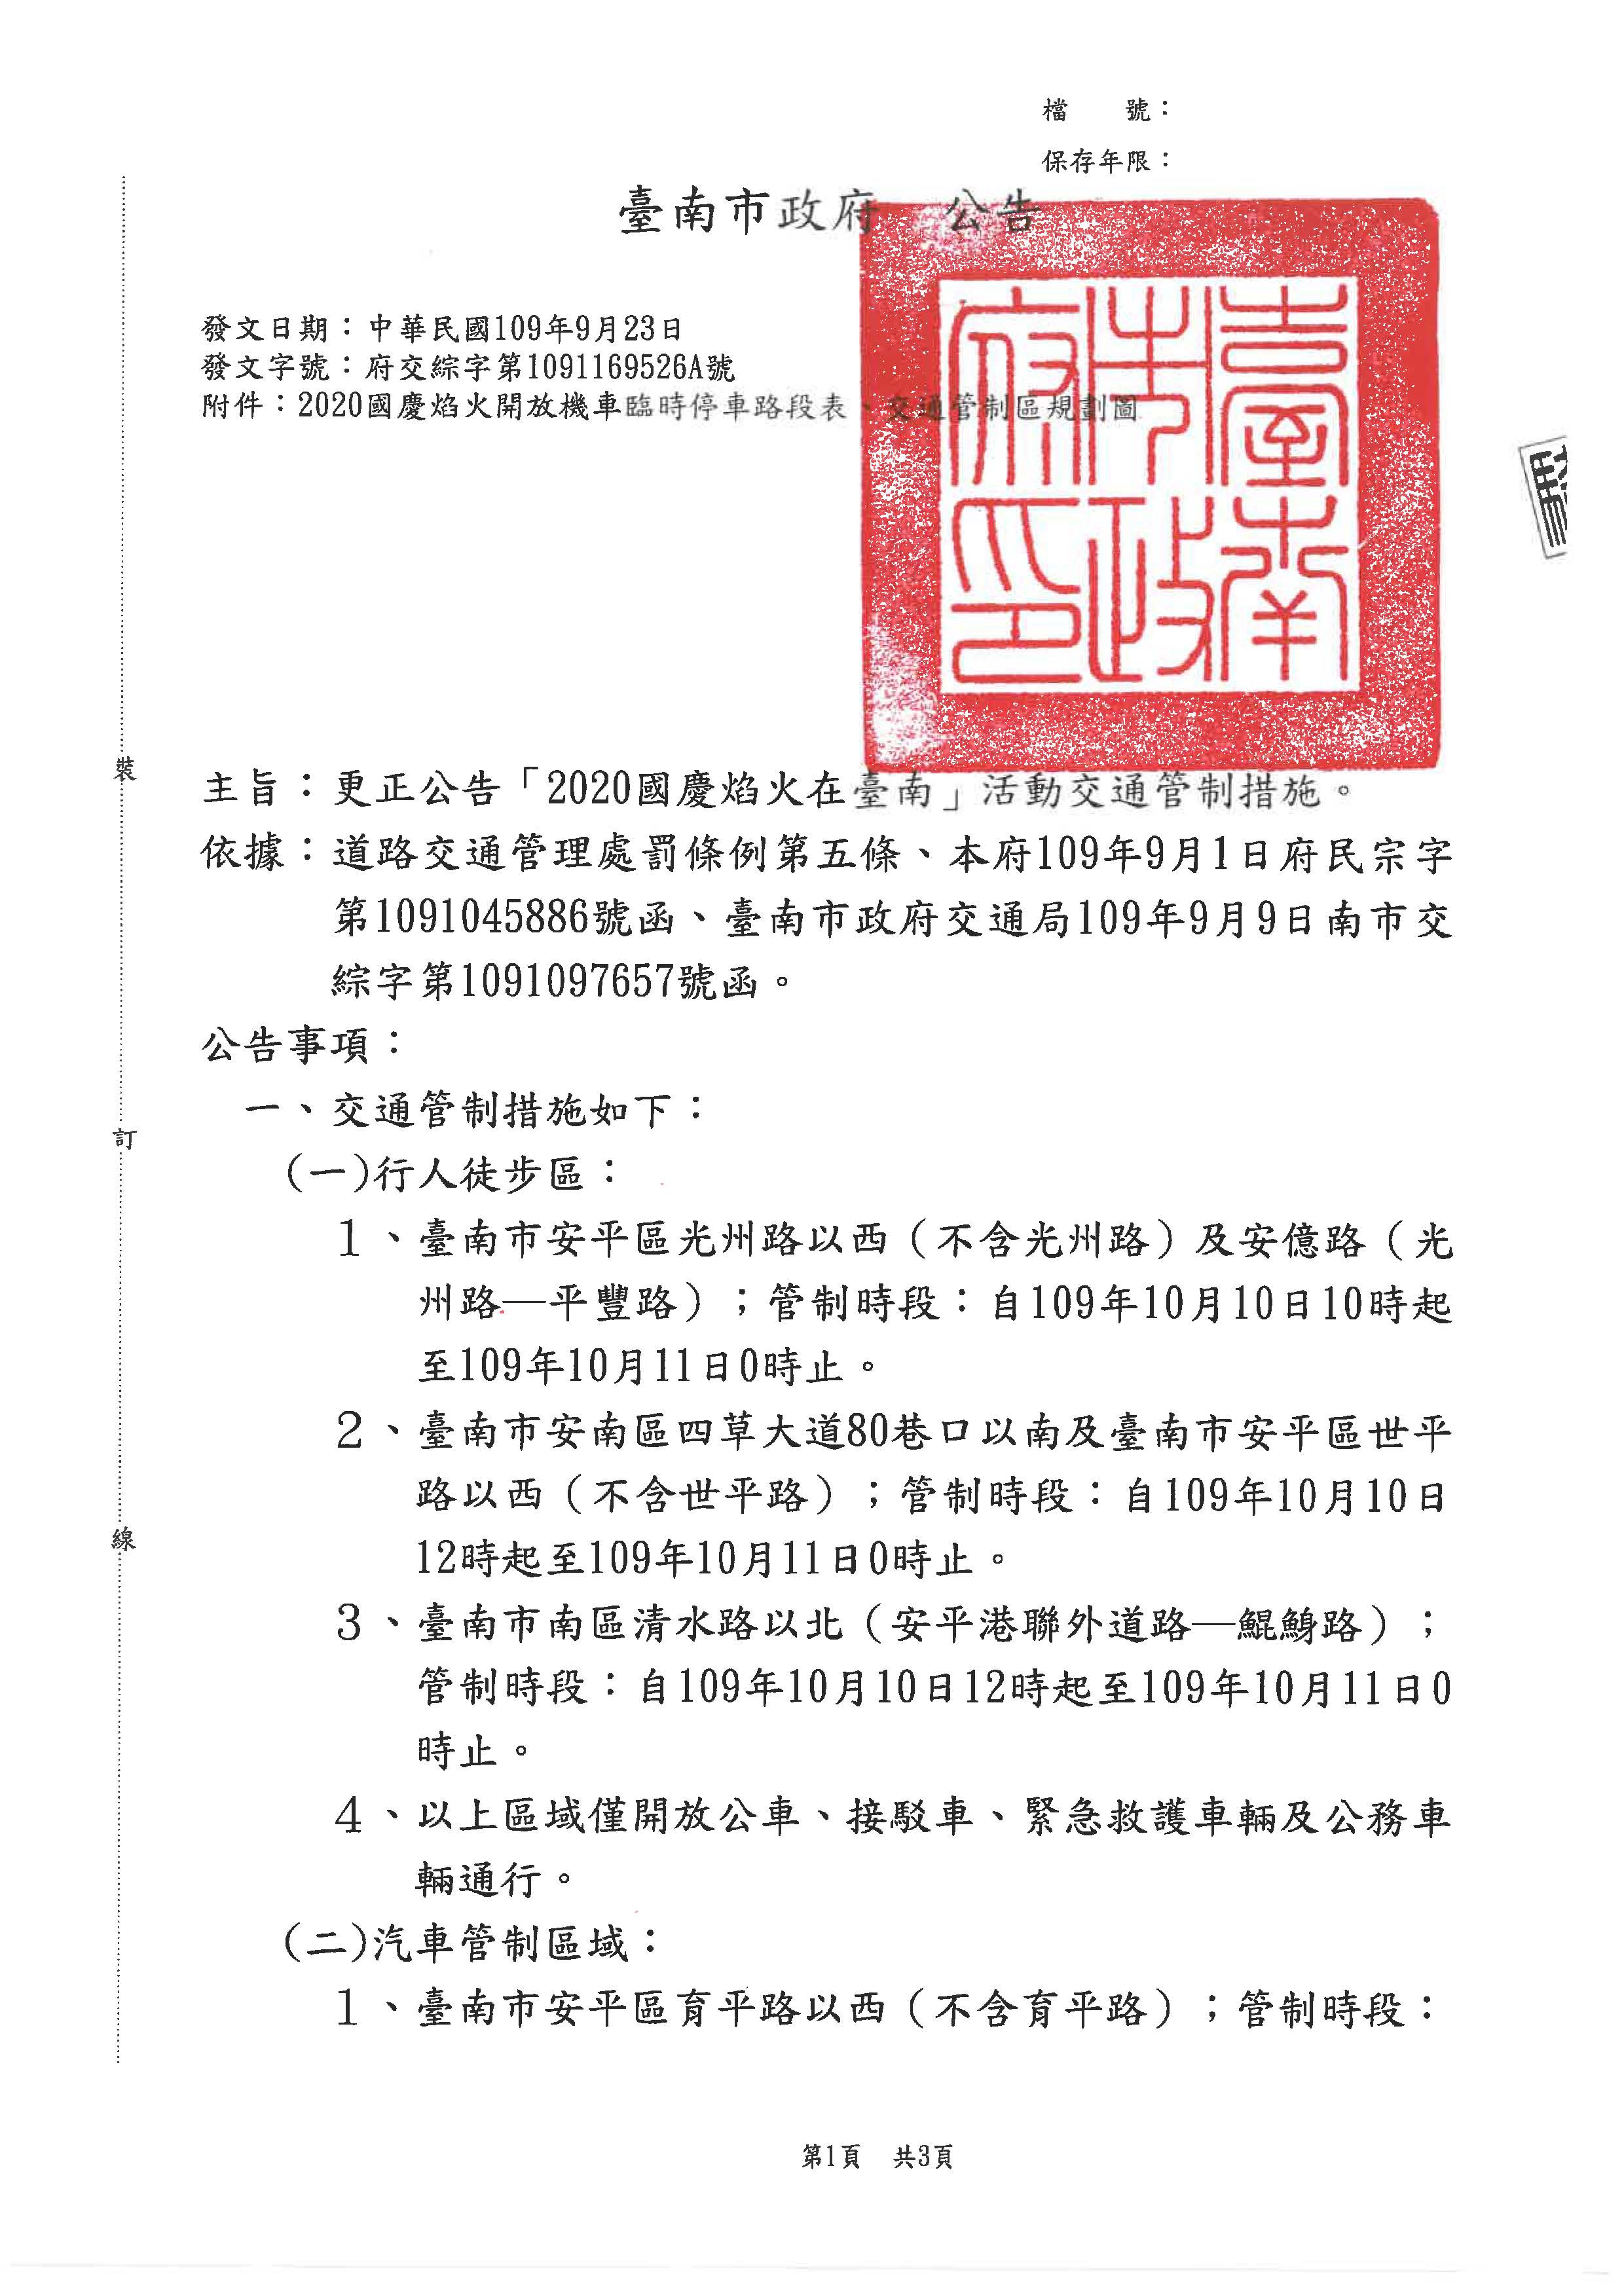 更正公告2020國慶焰火在臺南活動交通管制頁面1